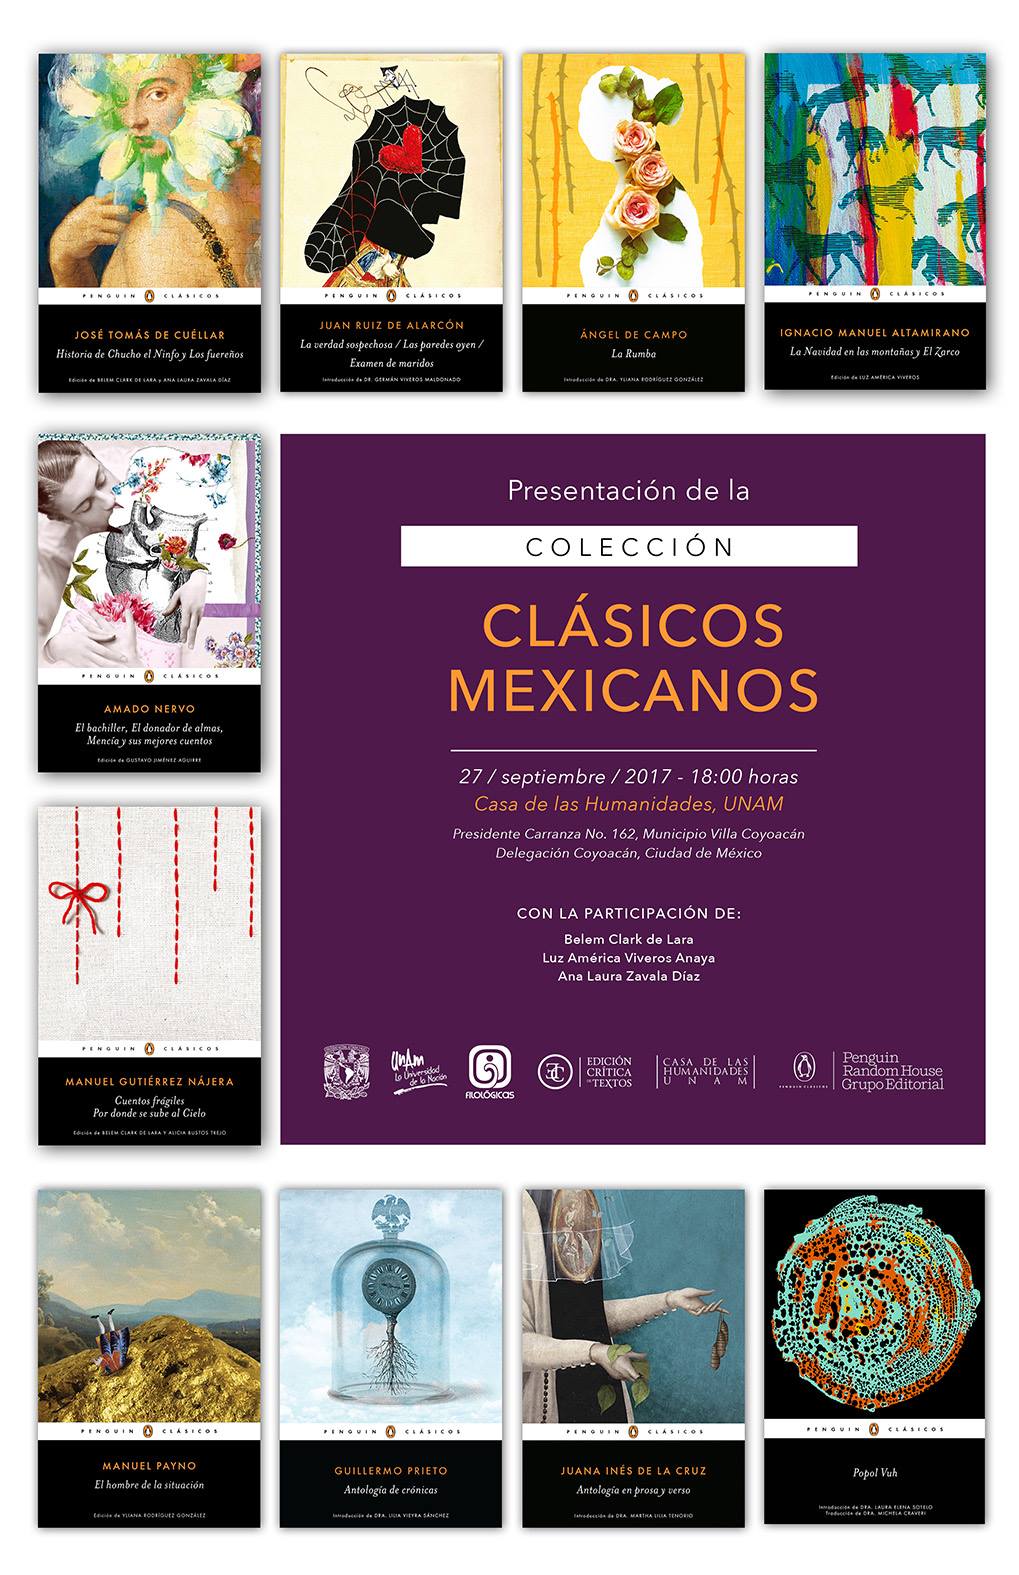 Colección Clásicos Mexicanos - Imagen cortesía del Instituto de Investigaciones Filológicas de la UNAM